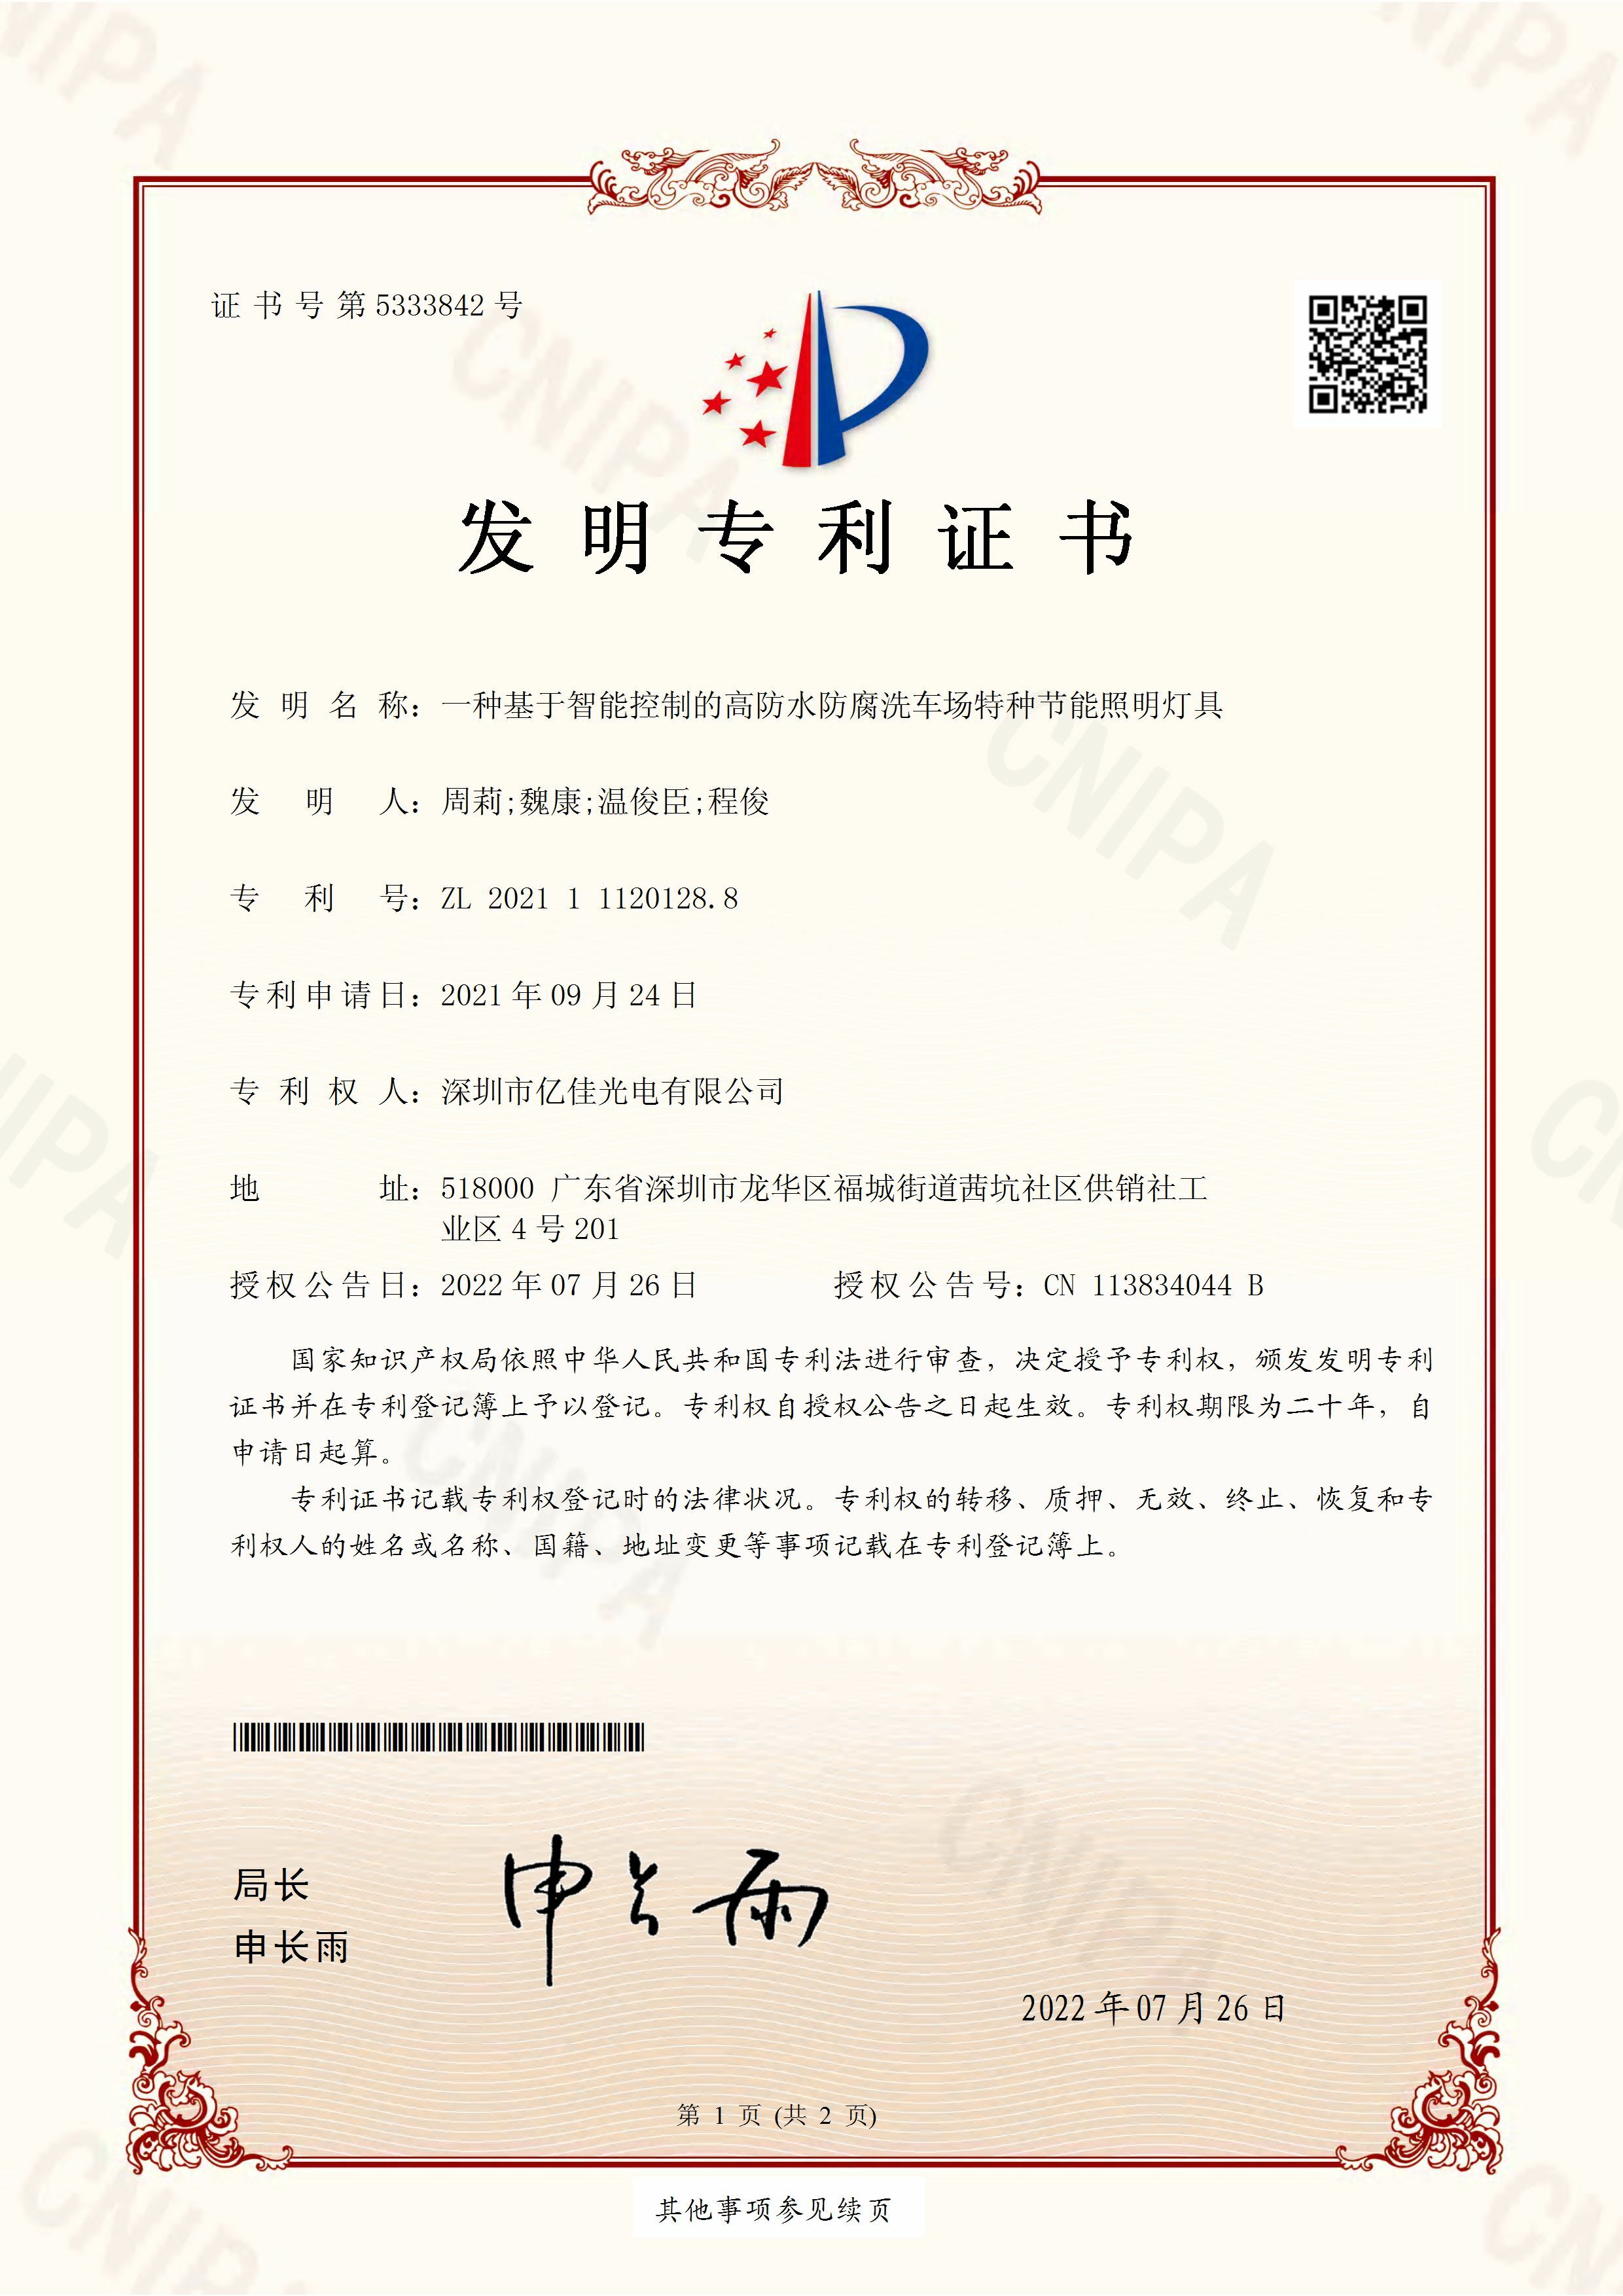 深圳市qy千亿体育光电有限公司洗车场节能照明灯发明专利申请获得通过